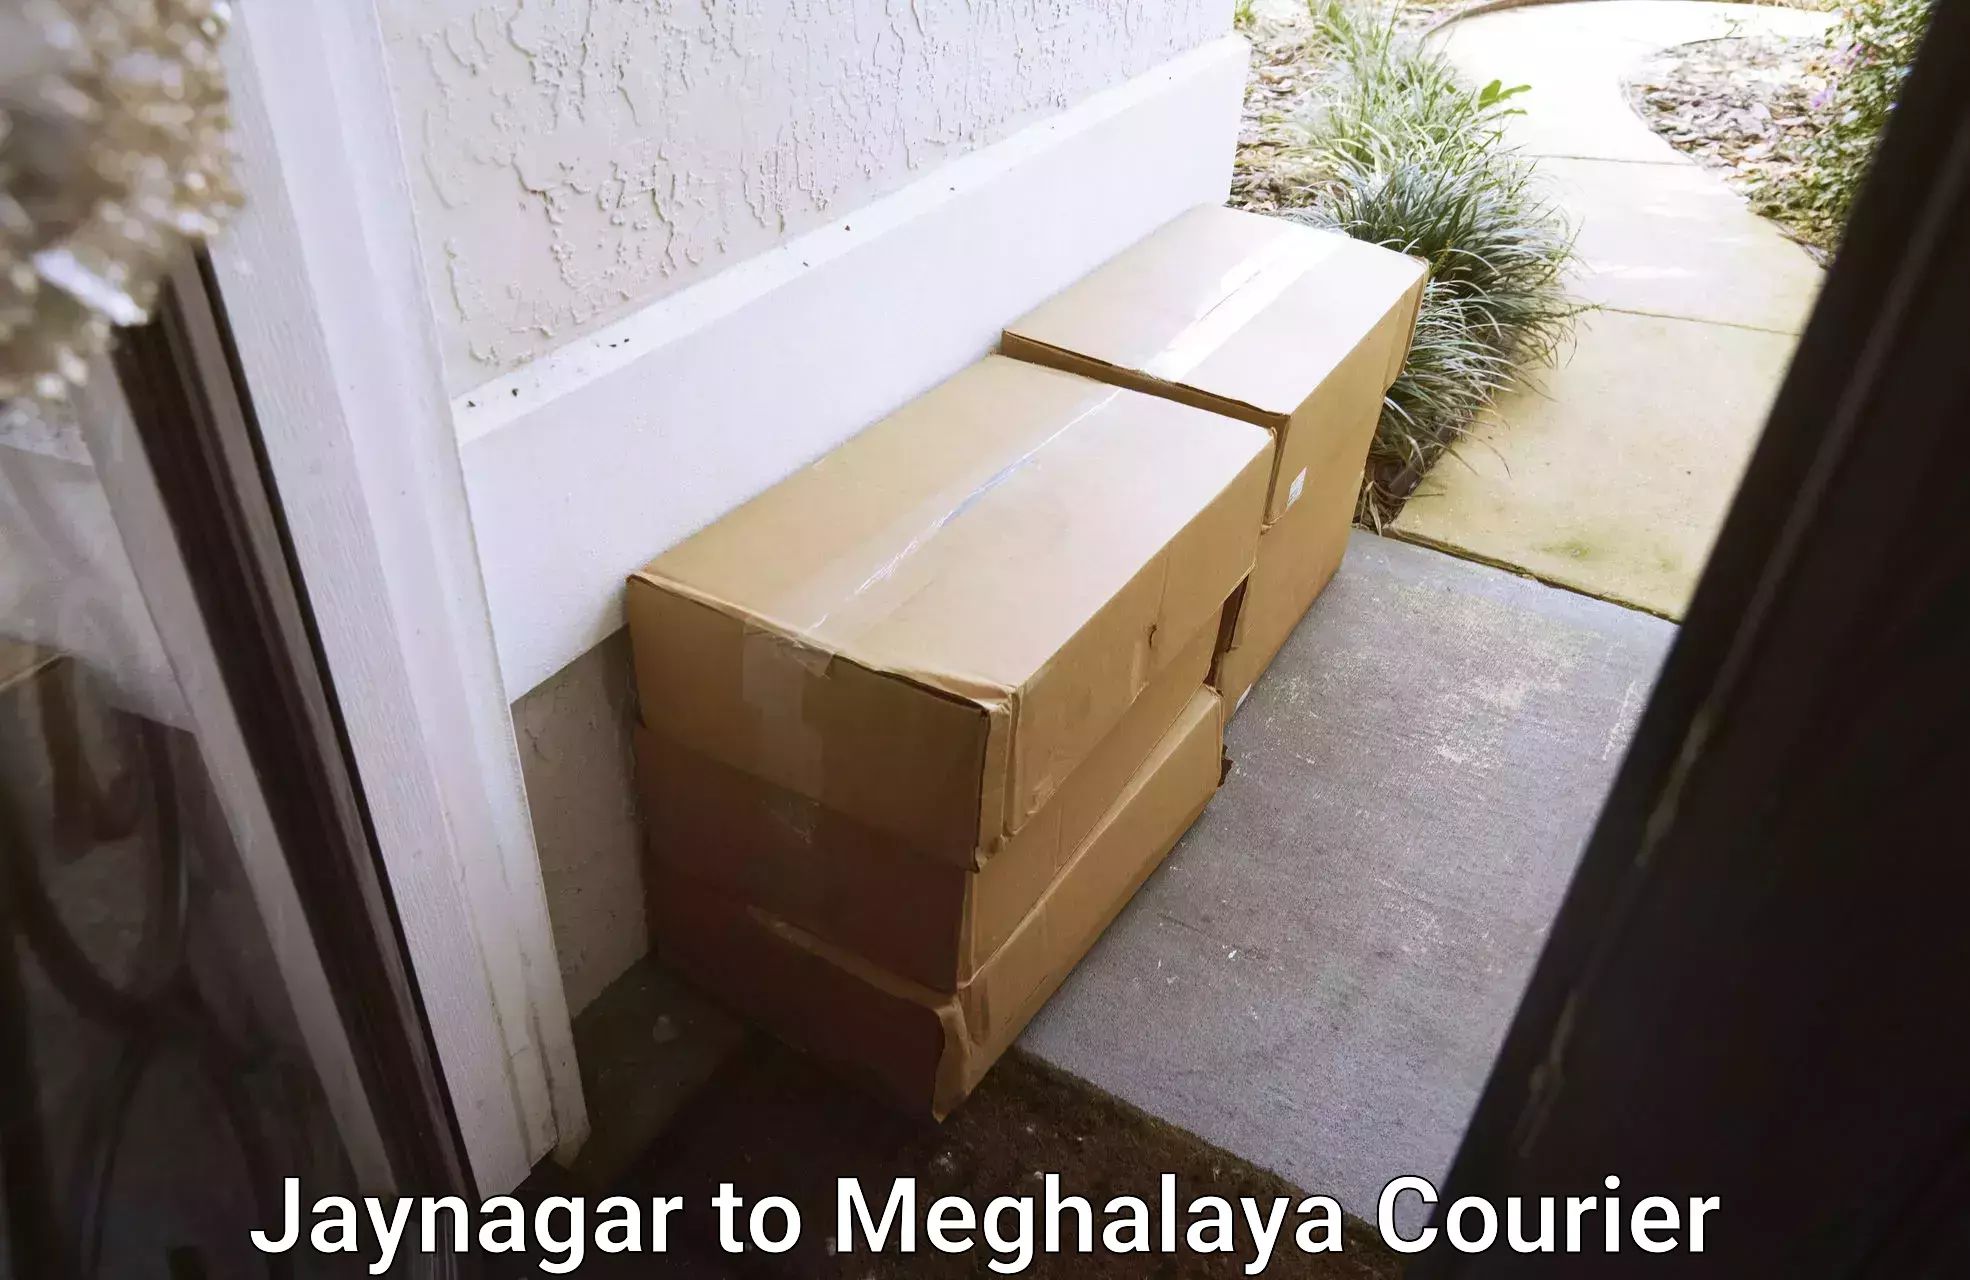 Residential moving services Jaynagar to Meghalaya